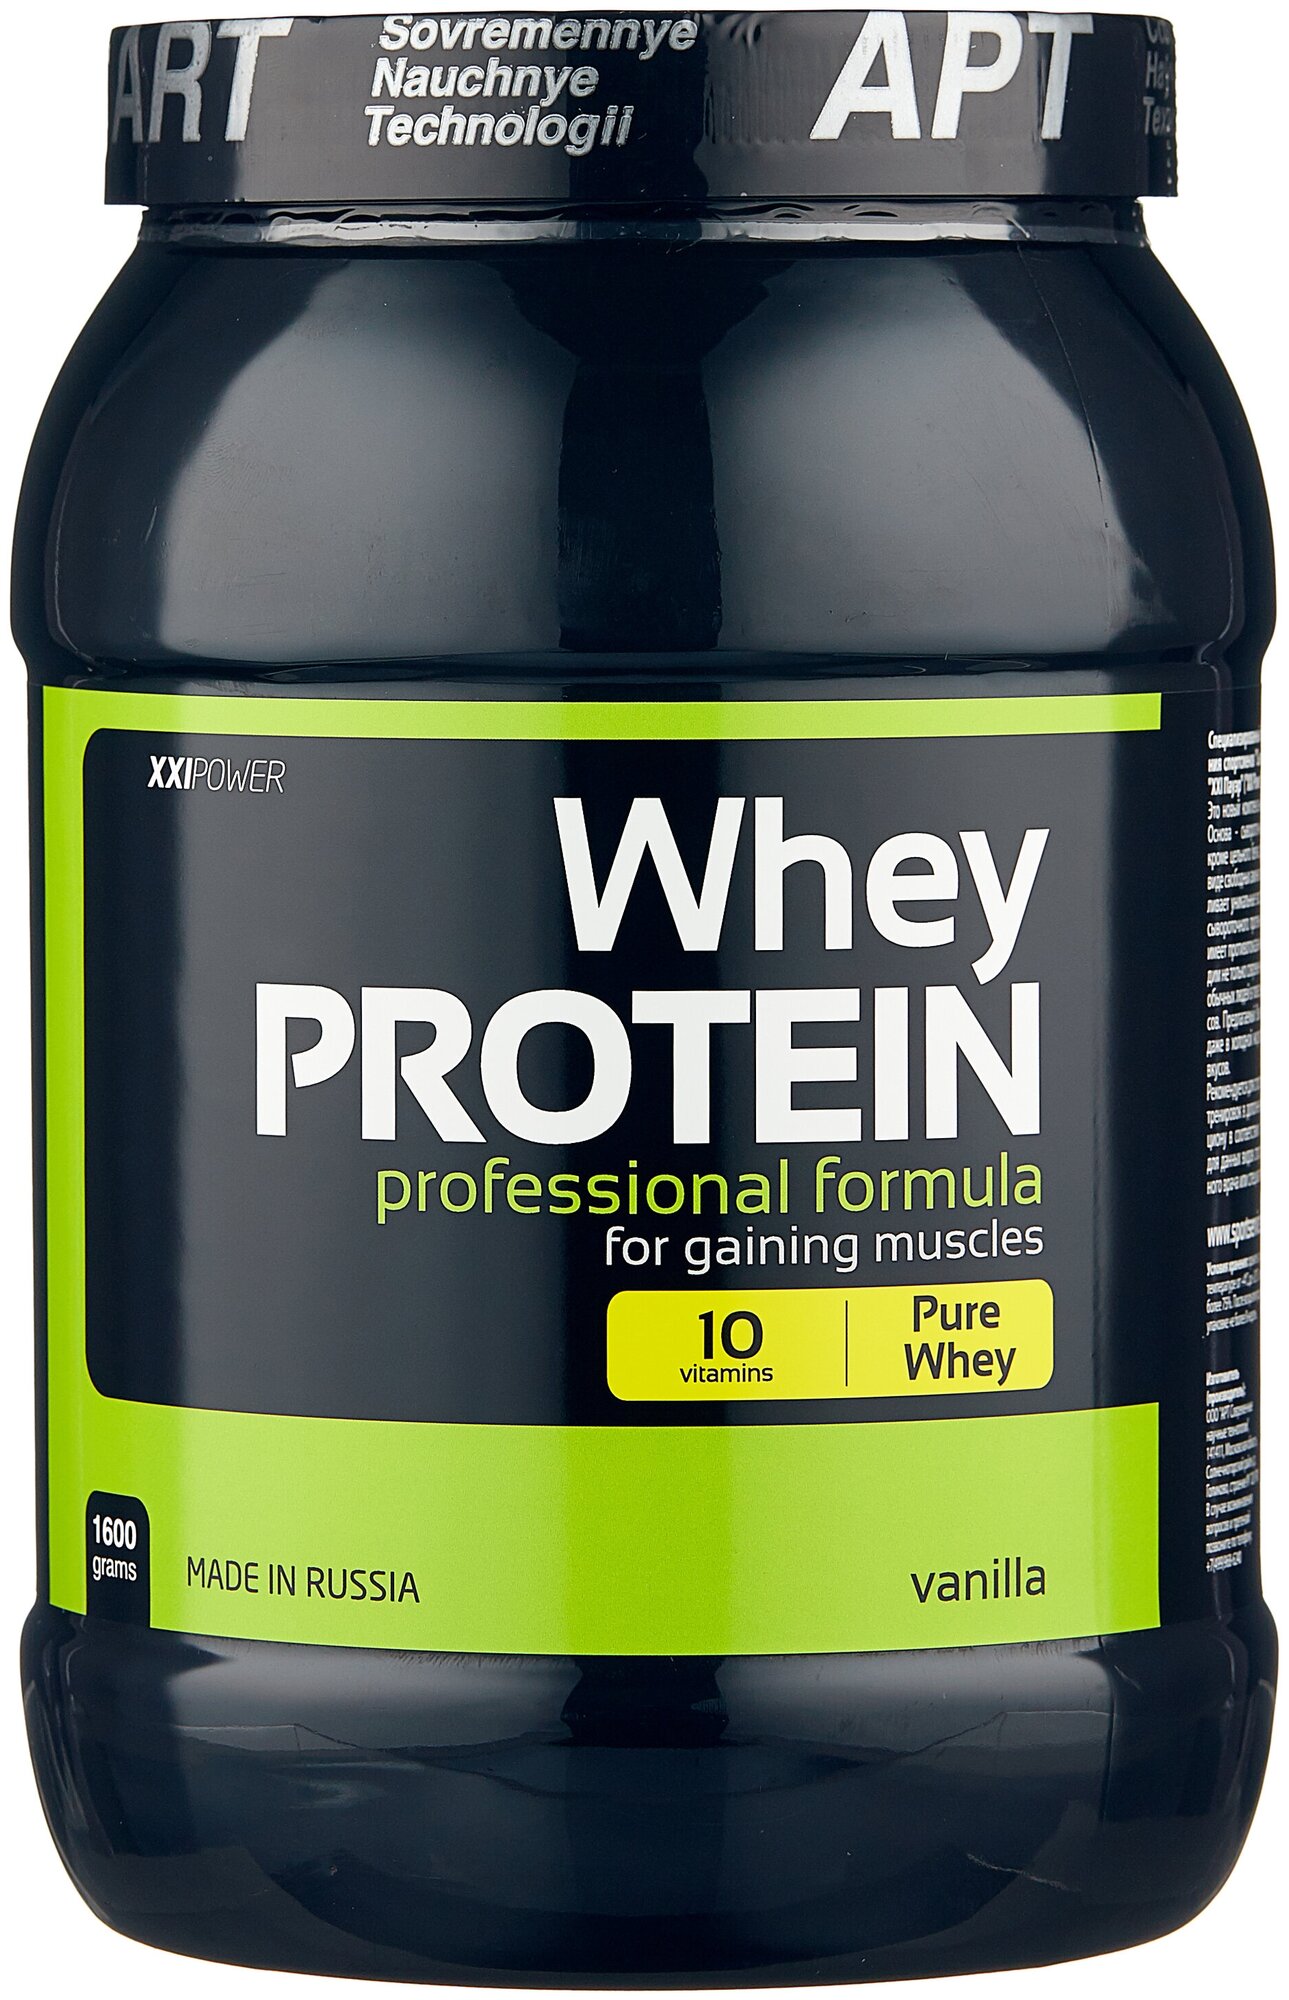 Протеин XXI Power Whey Protein — купить по выгодной цене на Яндекс.Маркете